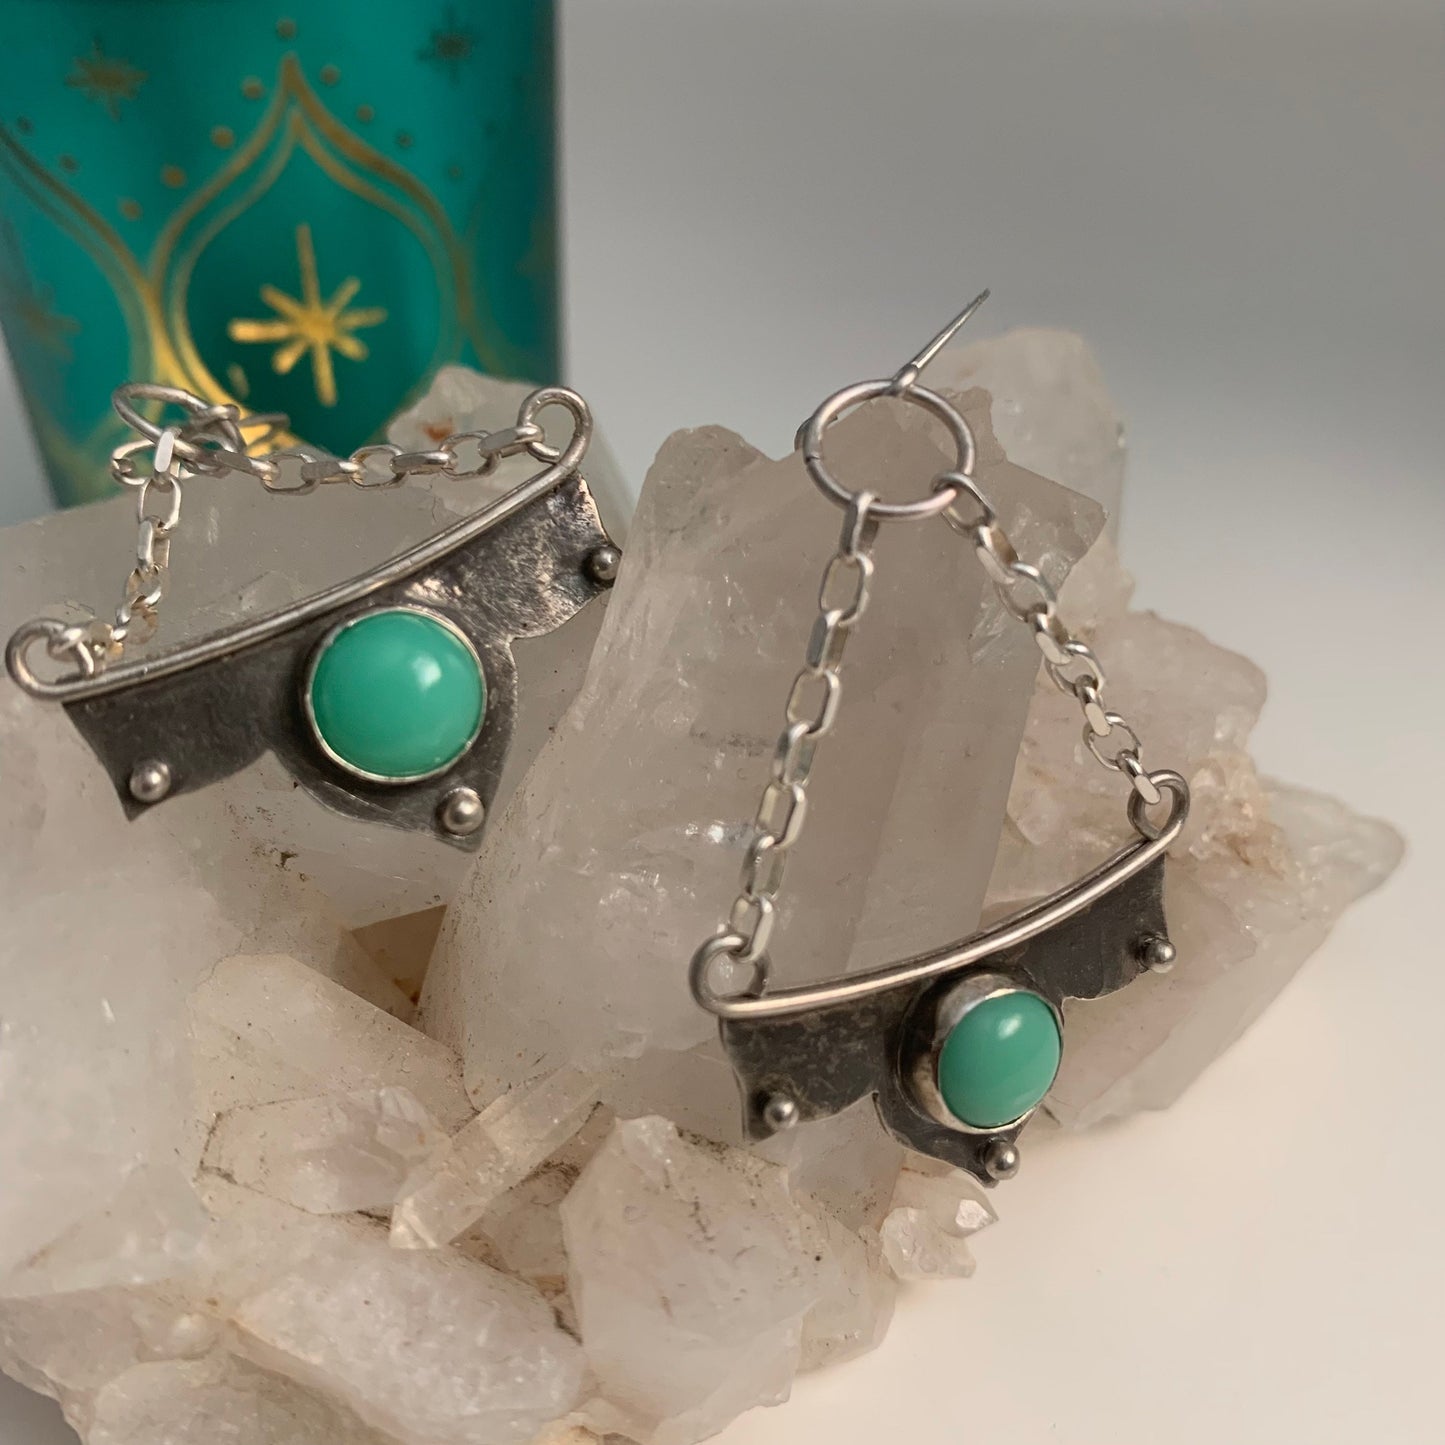 Gemstone dangle earrings - chandelier style earrings - mint chrysoprase stone - green gemstone in sterling setting - silver handmade jewelry